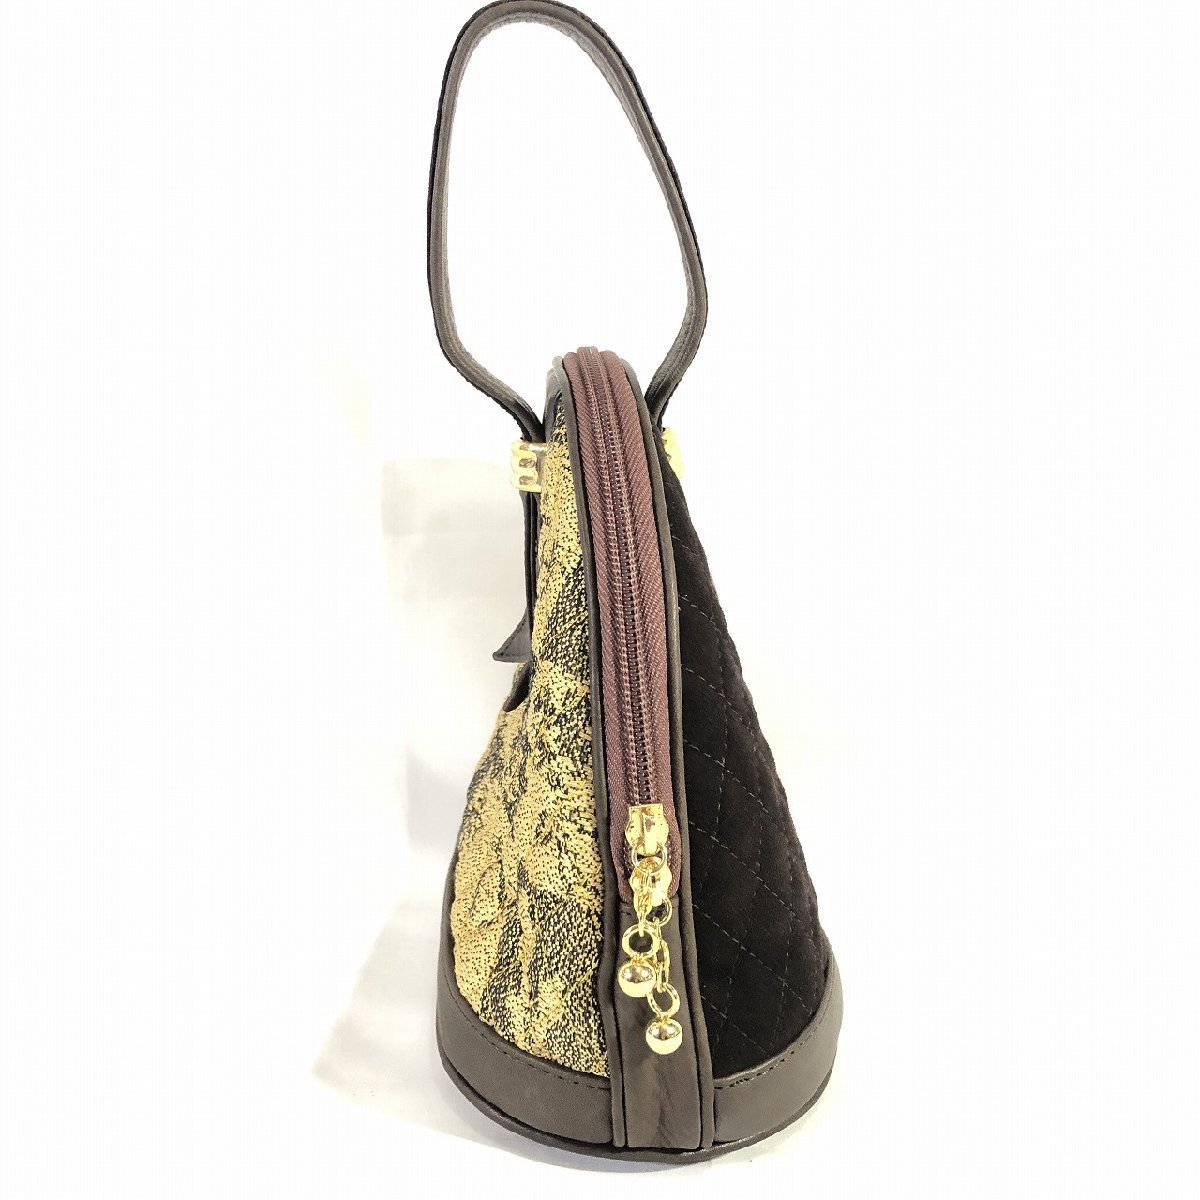 ... брэнд   натуральная кожа   QUILTING   переключение   дамская сумка   ... чай    золото   товар в хорошем состоянии   стоимость доставки 510  йен 